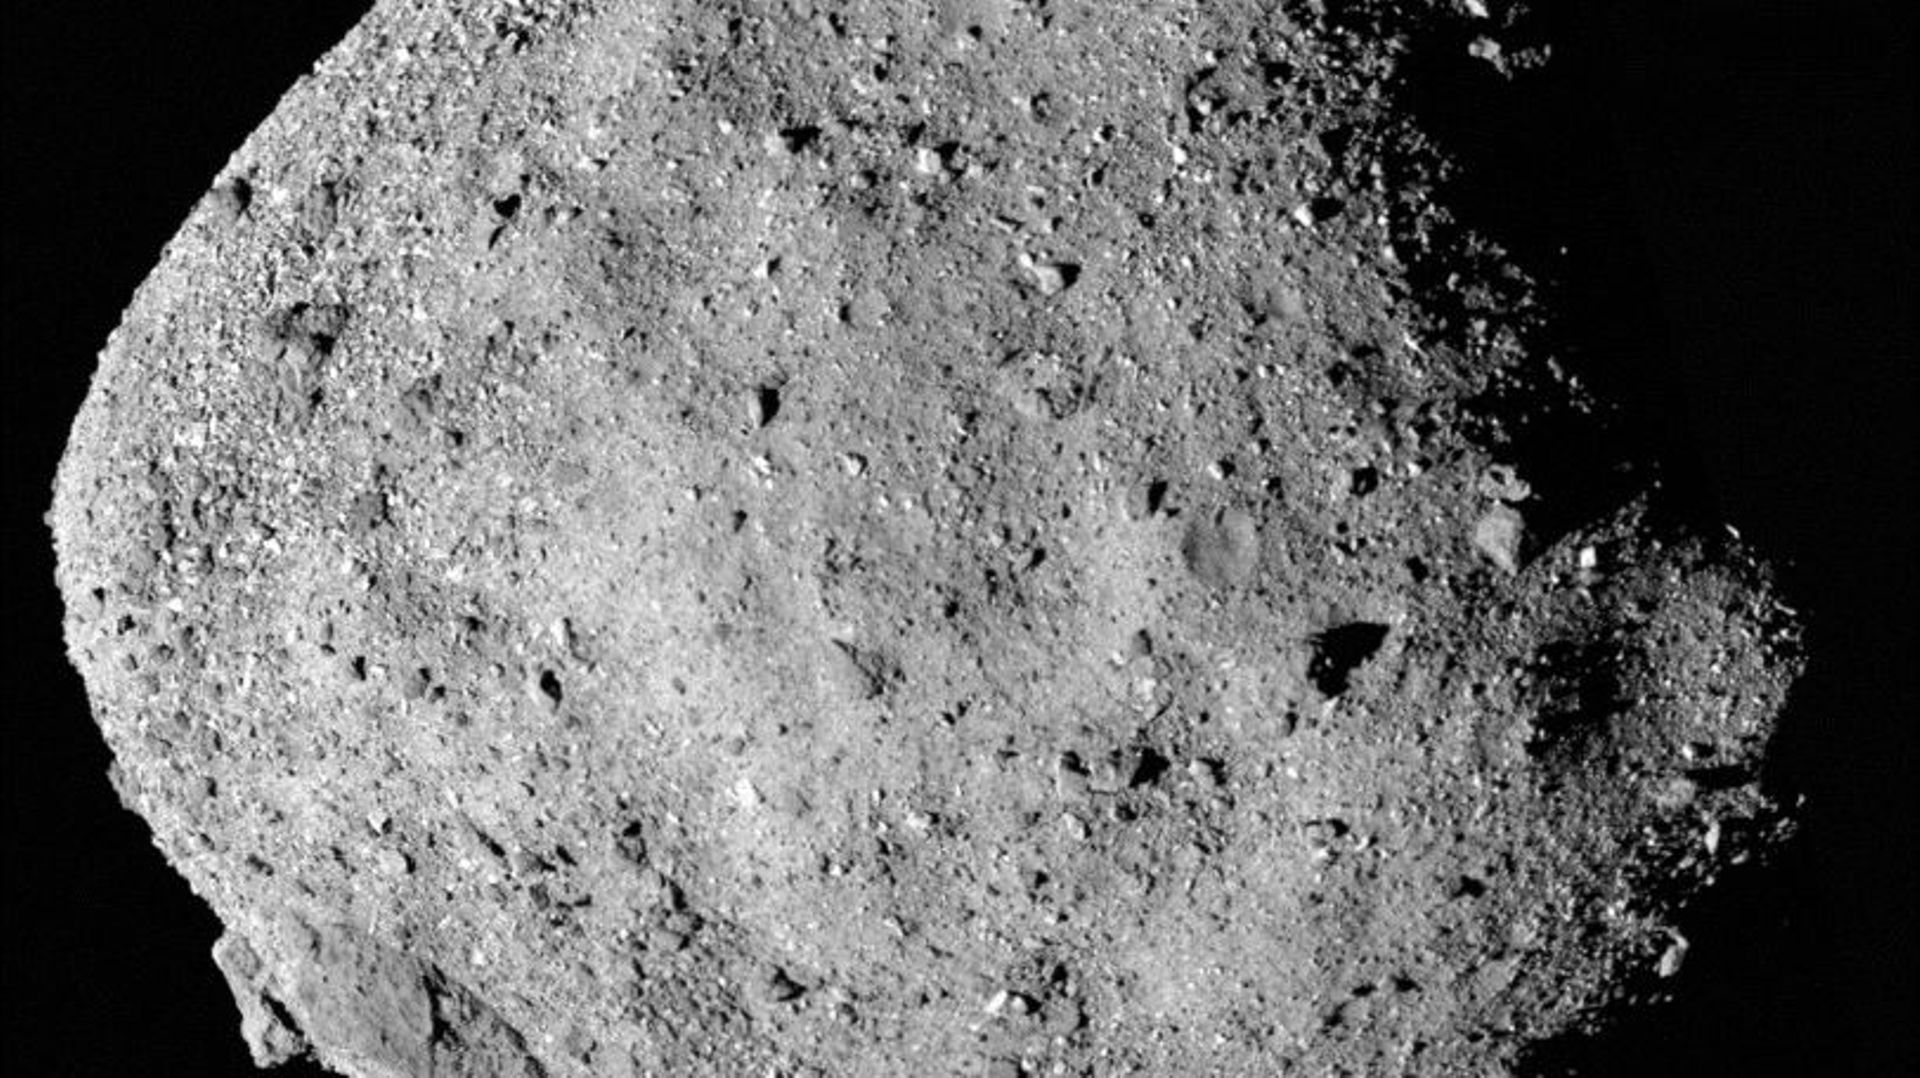 la-nasa-va-envoyer-une-sonde-pour-prelever-un-echantillon-sur-l-asteroide-bennu